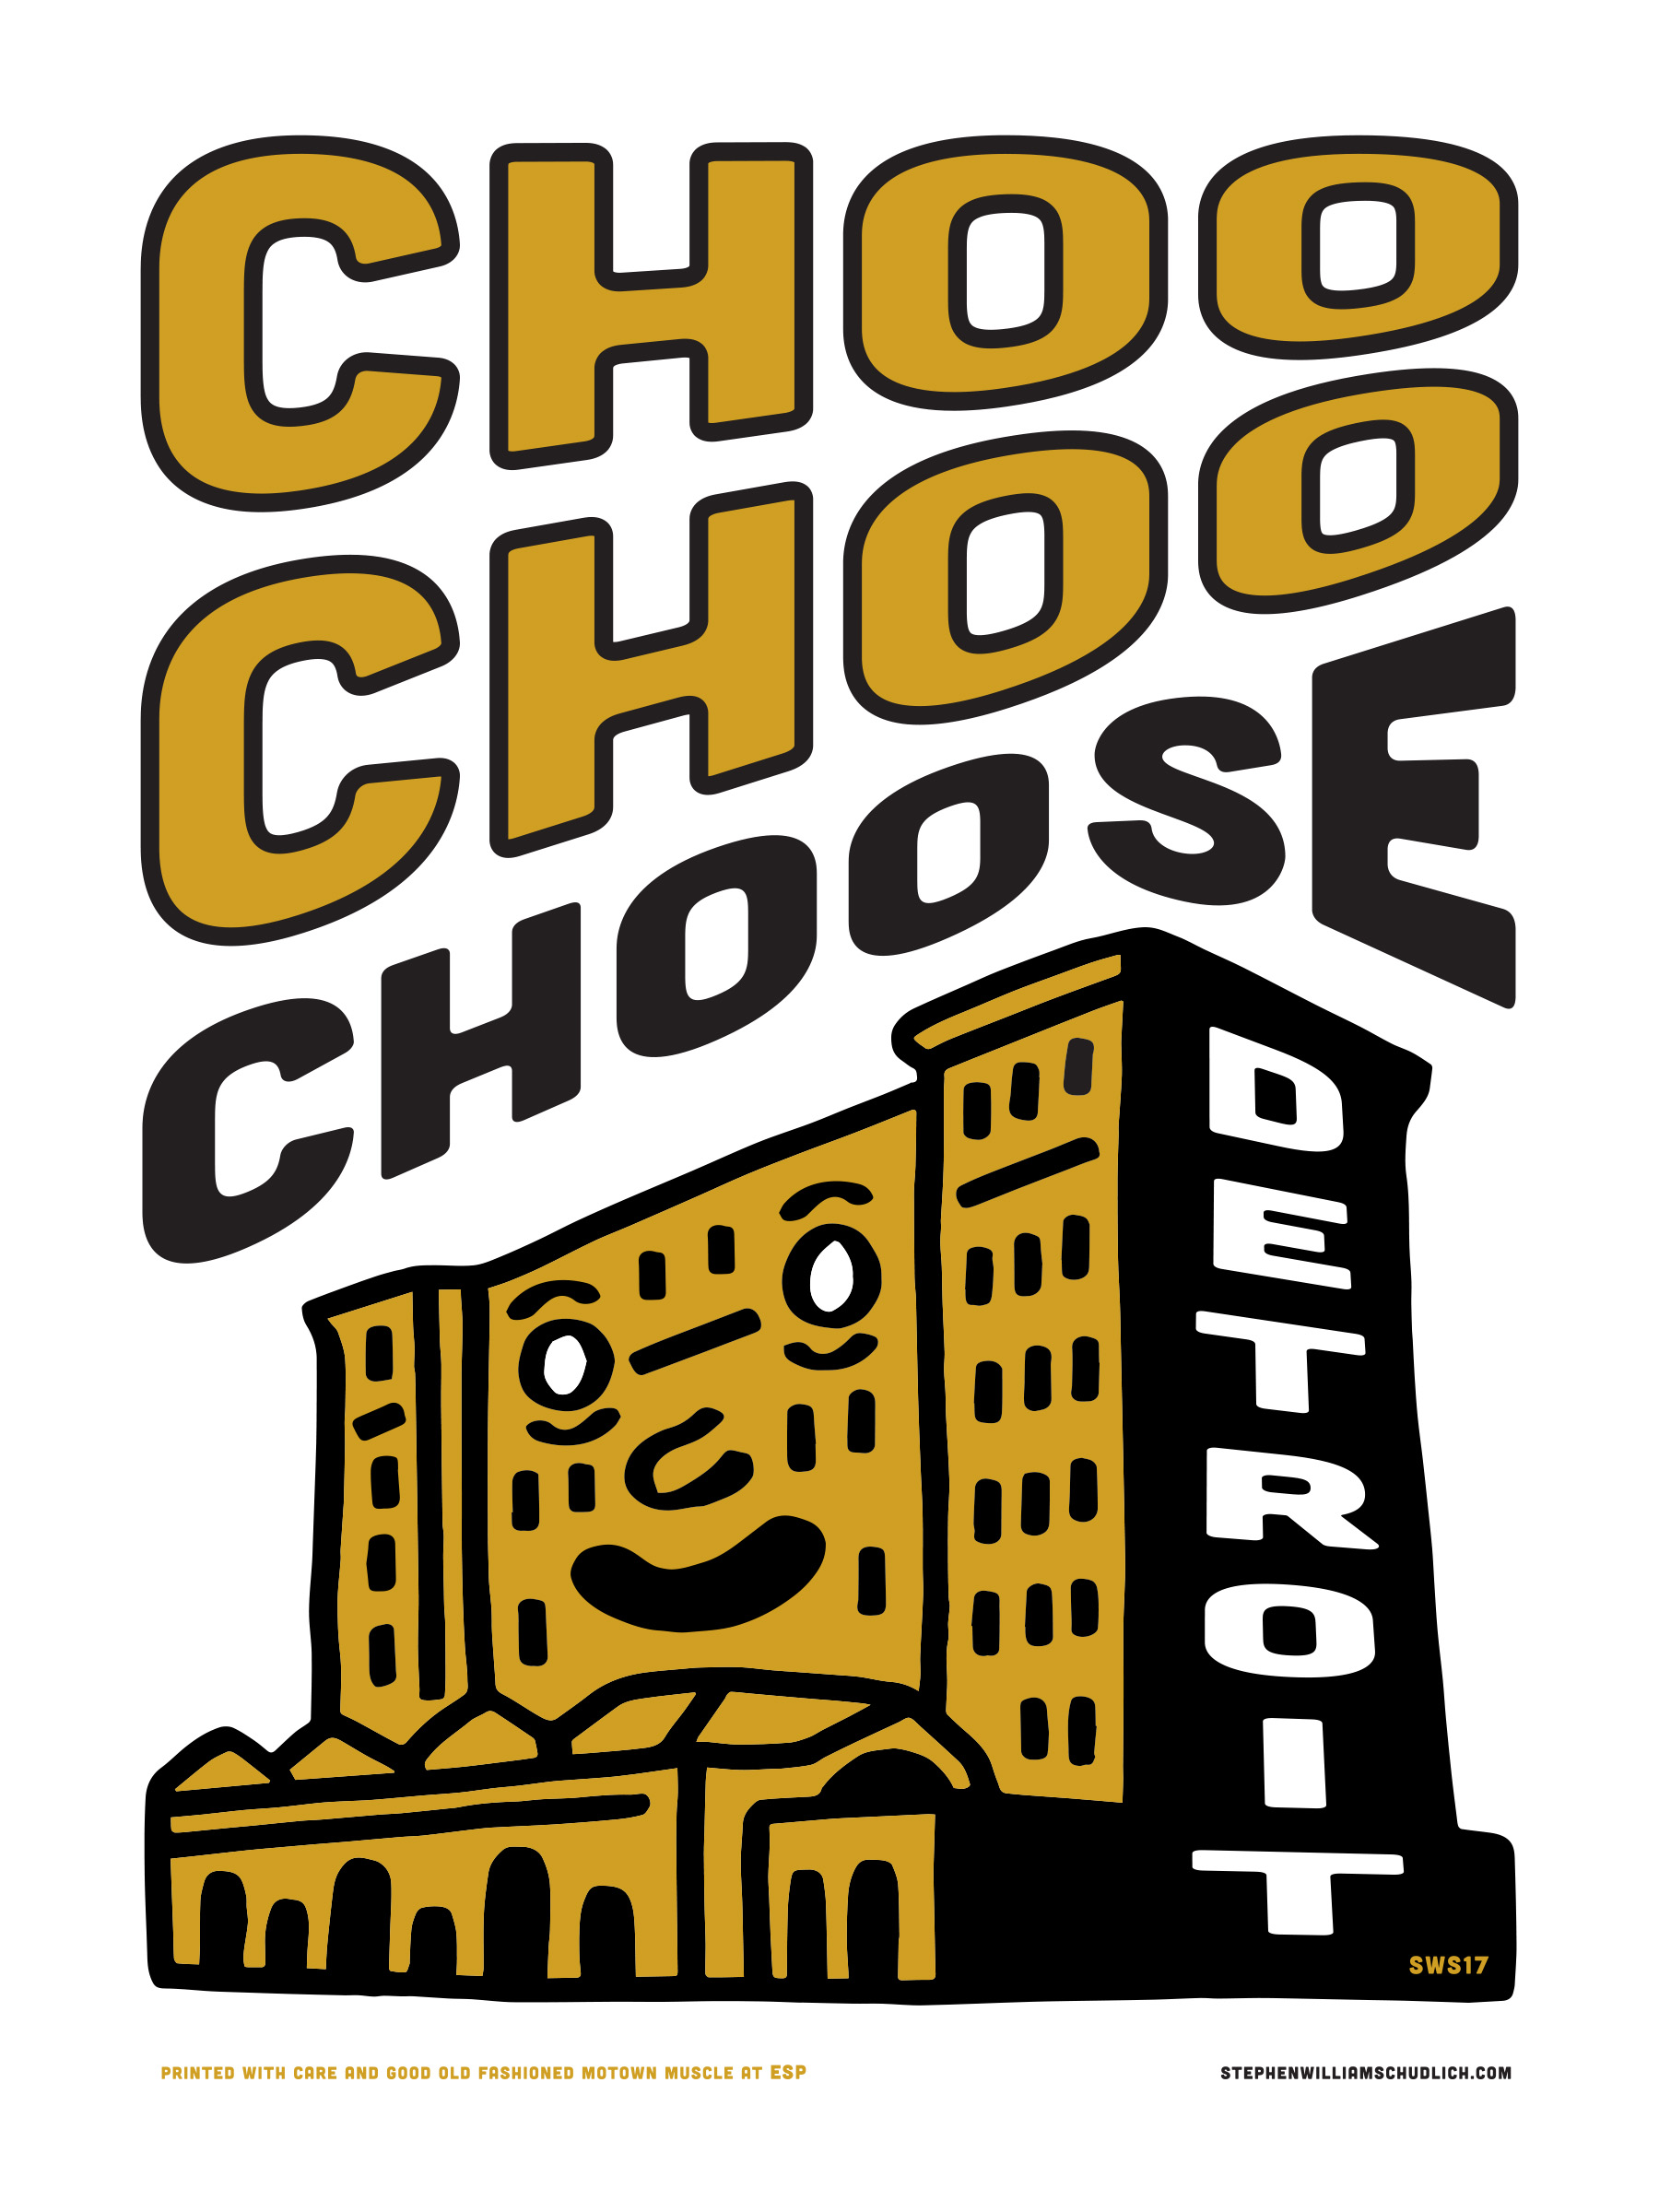 Choo Choo Choose, by Stephen Schudlich <b>SOLD</b>